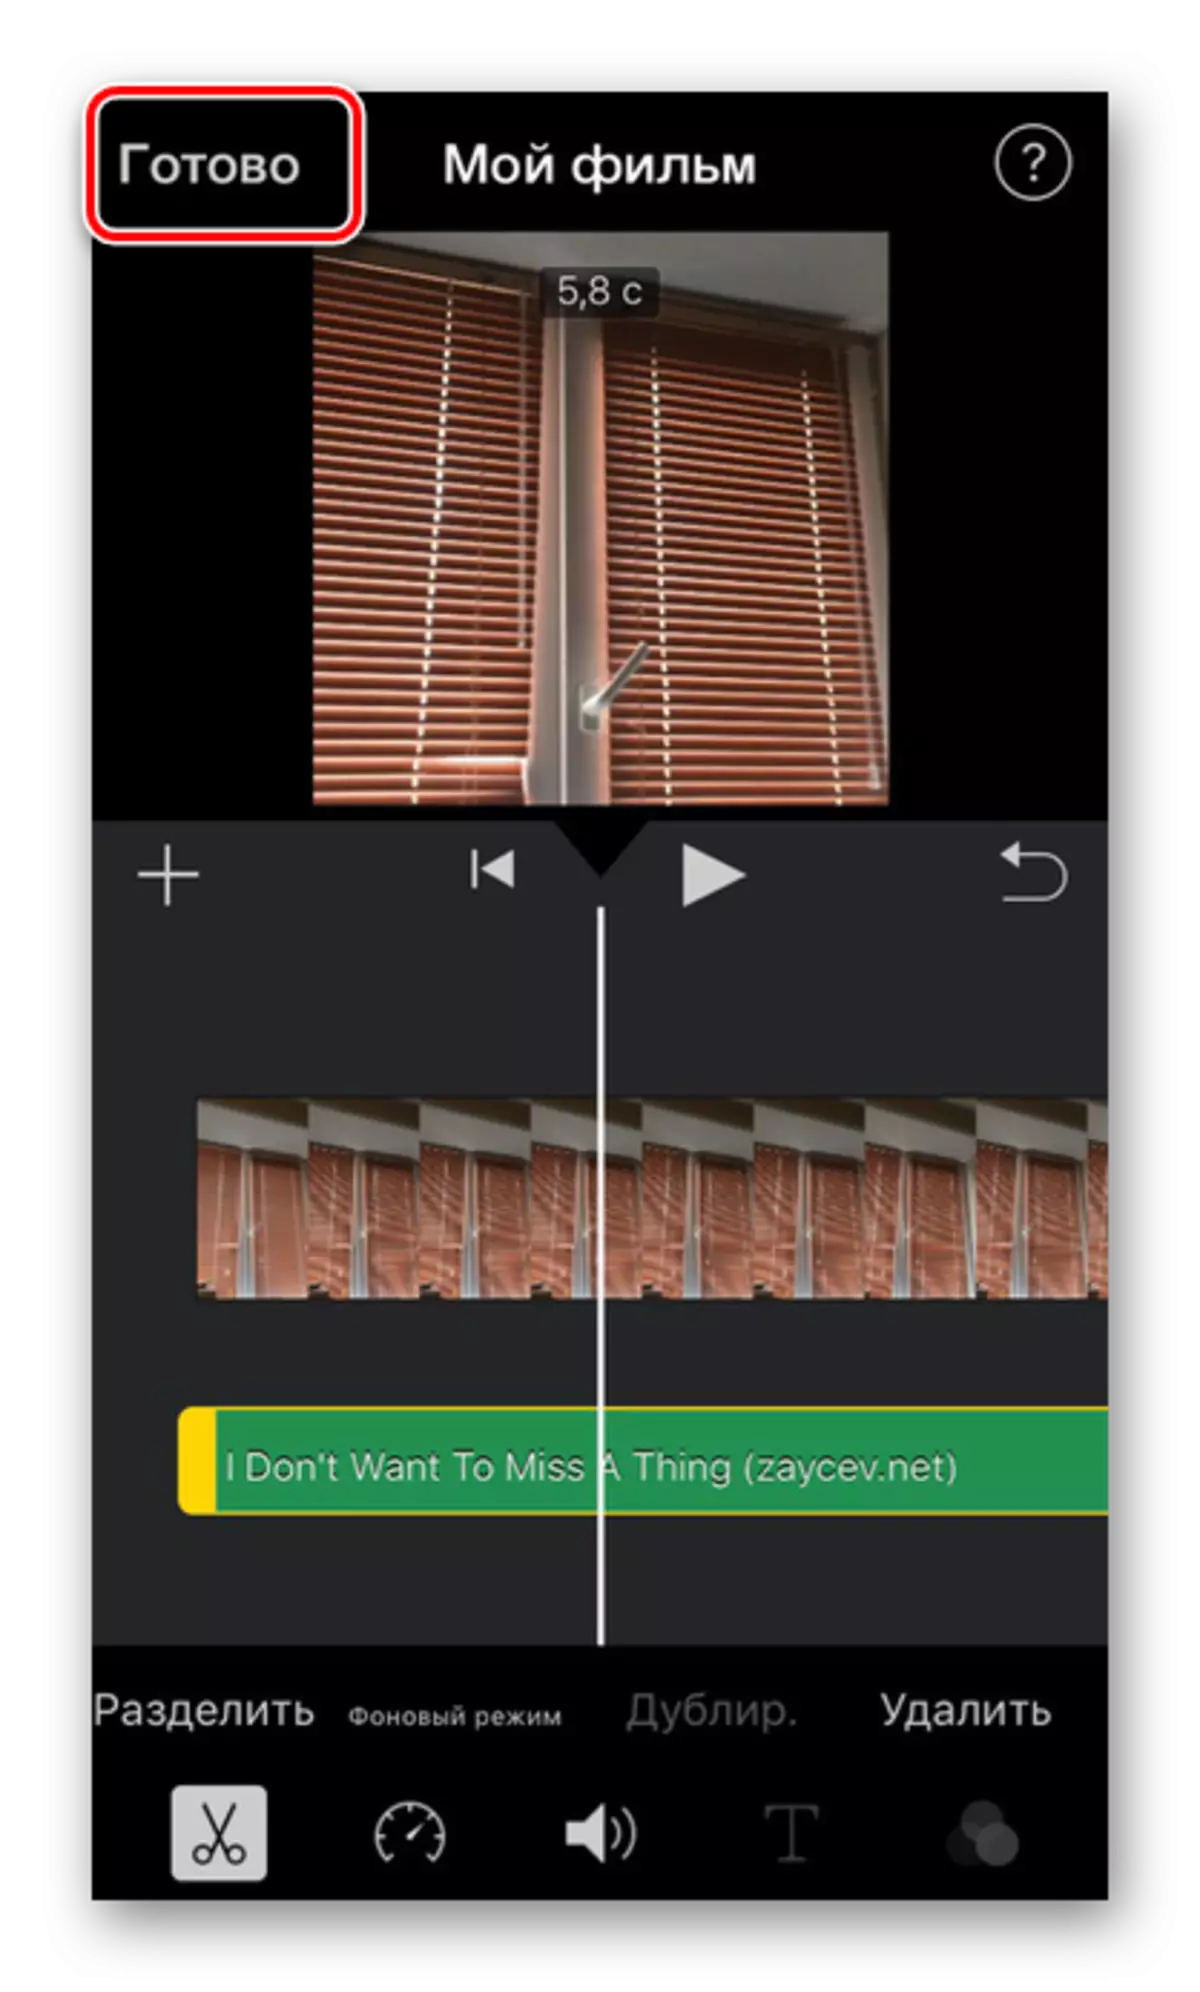 বোতাম টিপলে আইফোনের iMovie অ্যাপ্লিকেশনে ভিডিও এডিটিং শেষে প্রস্তুত